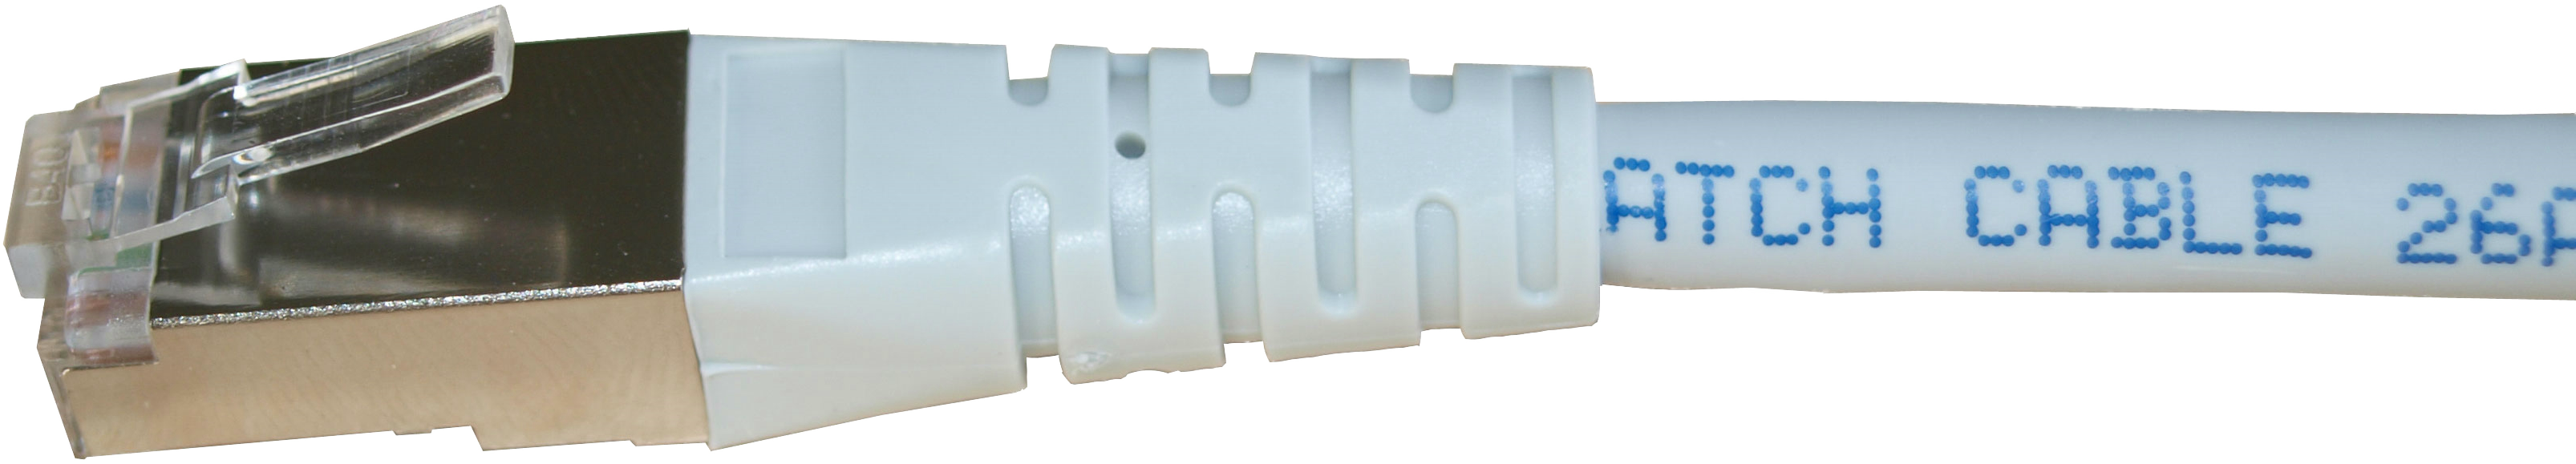 Kupferpatchkabel Cat.6 250MHz 2,0m weiß